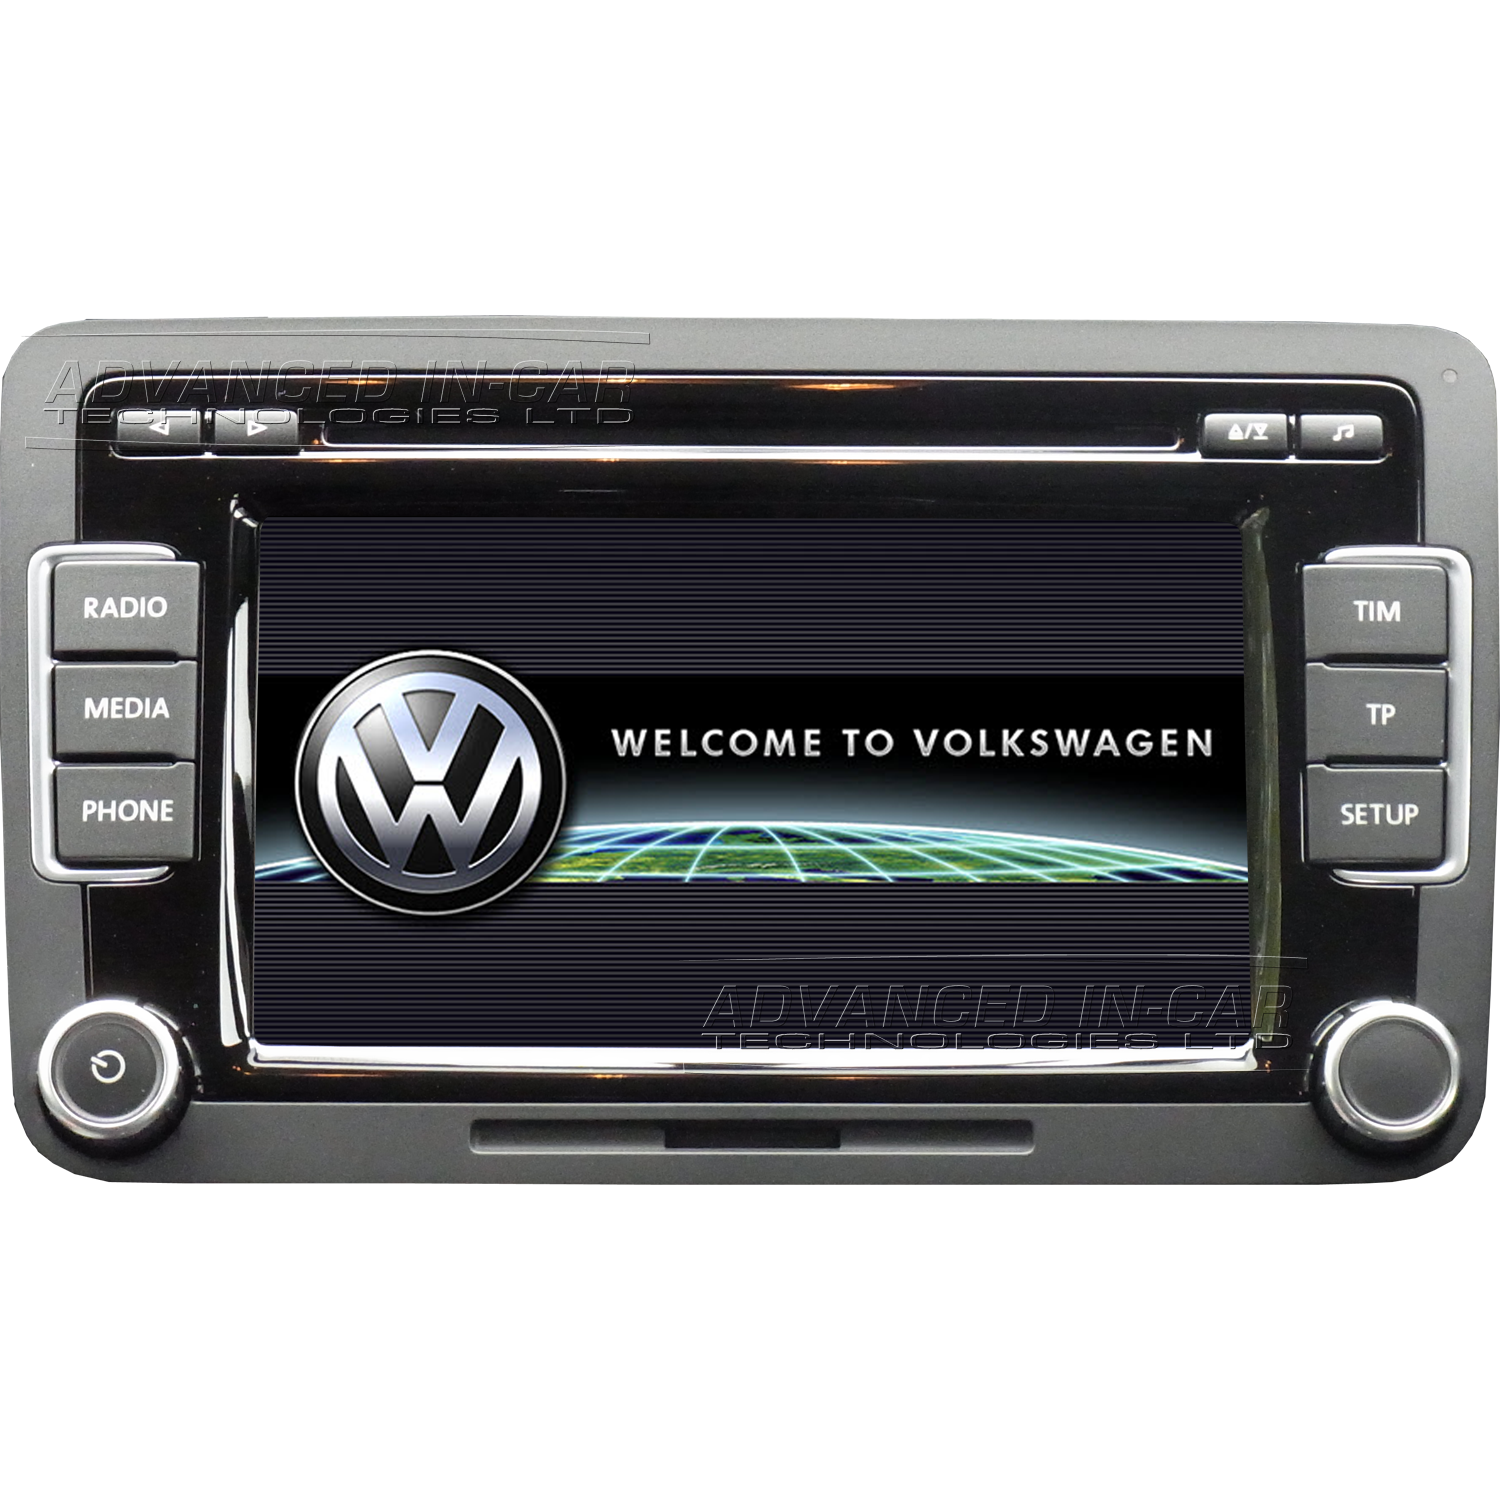 zwaartekracht tijger Gemiddeld Volkswagen RCD 510 Radio - Advanced In-Car Technologies